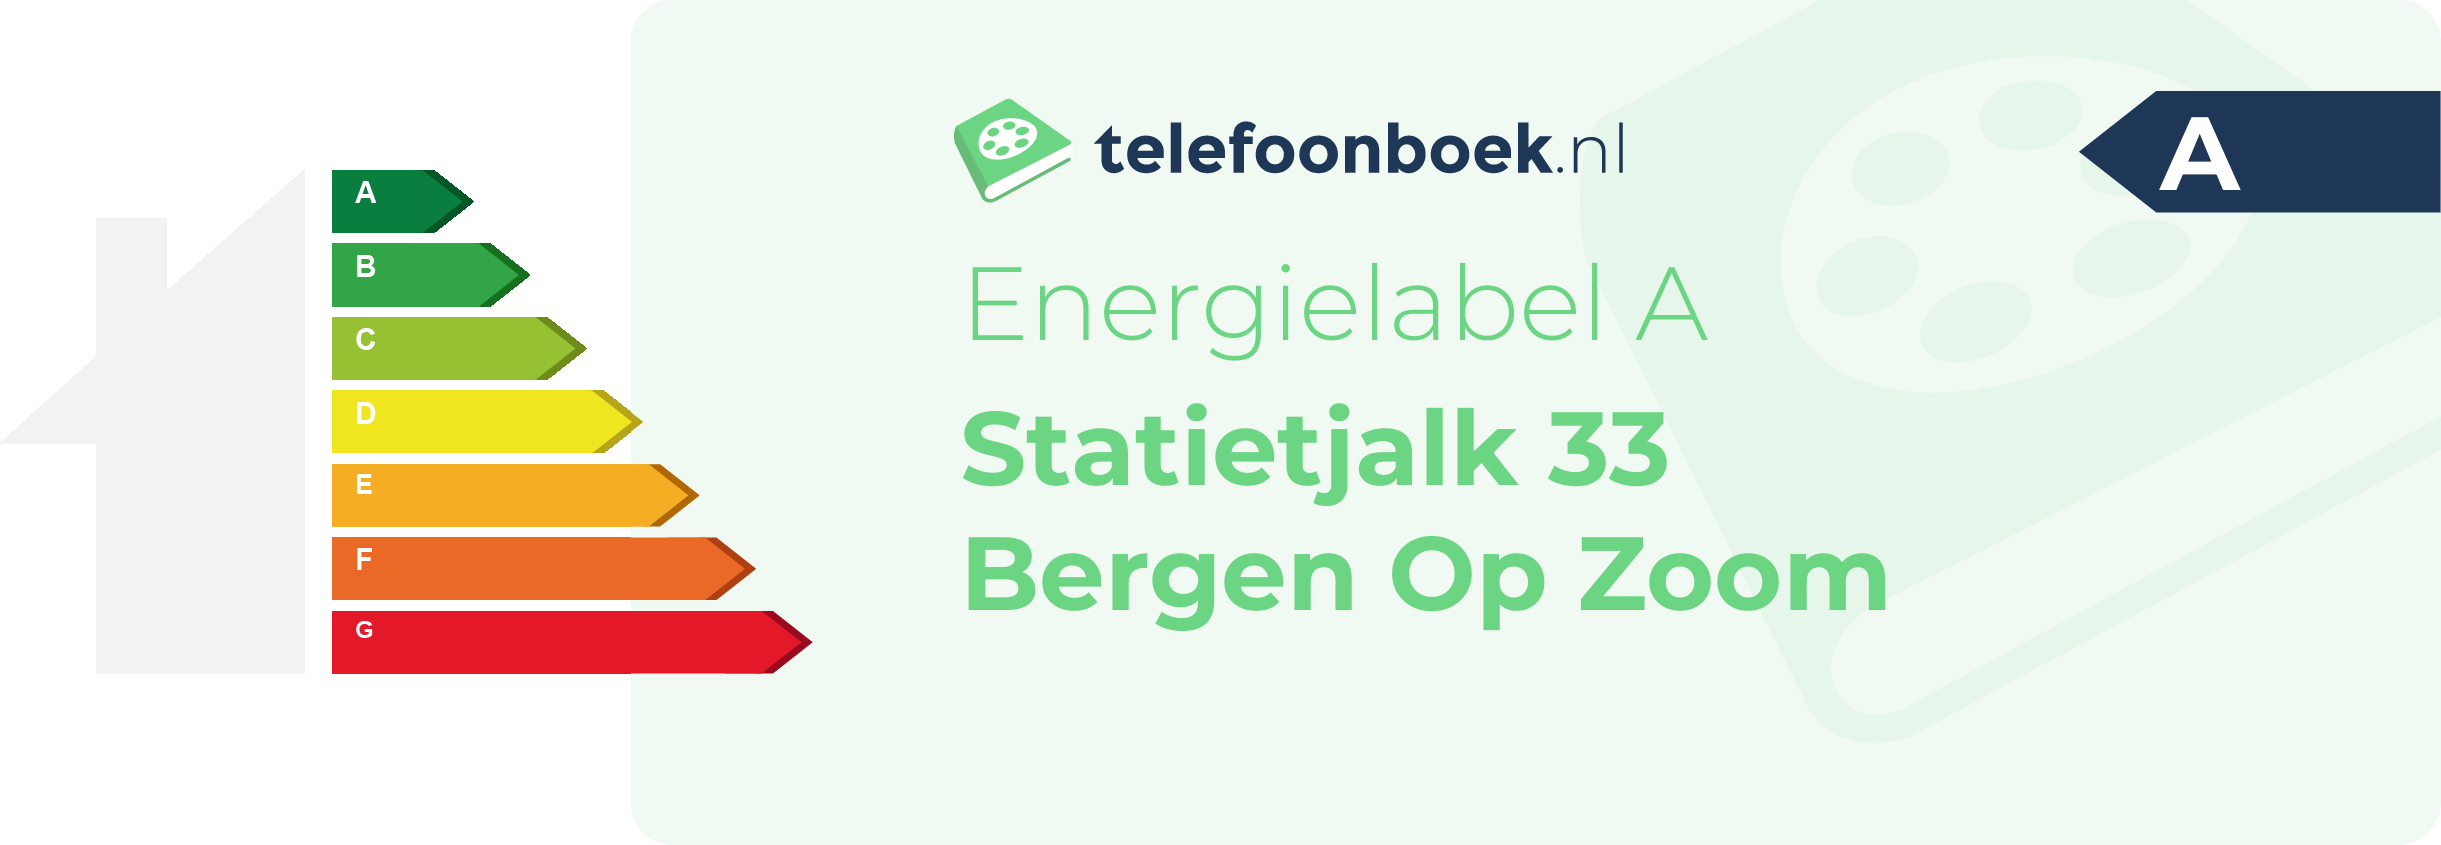 Energielabel Statietjalk 33 Bergen Op Zoom